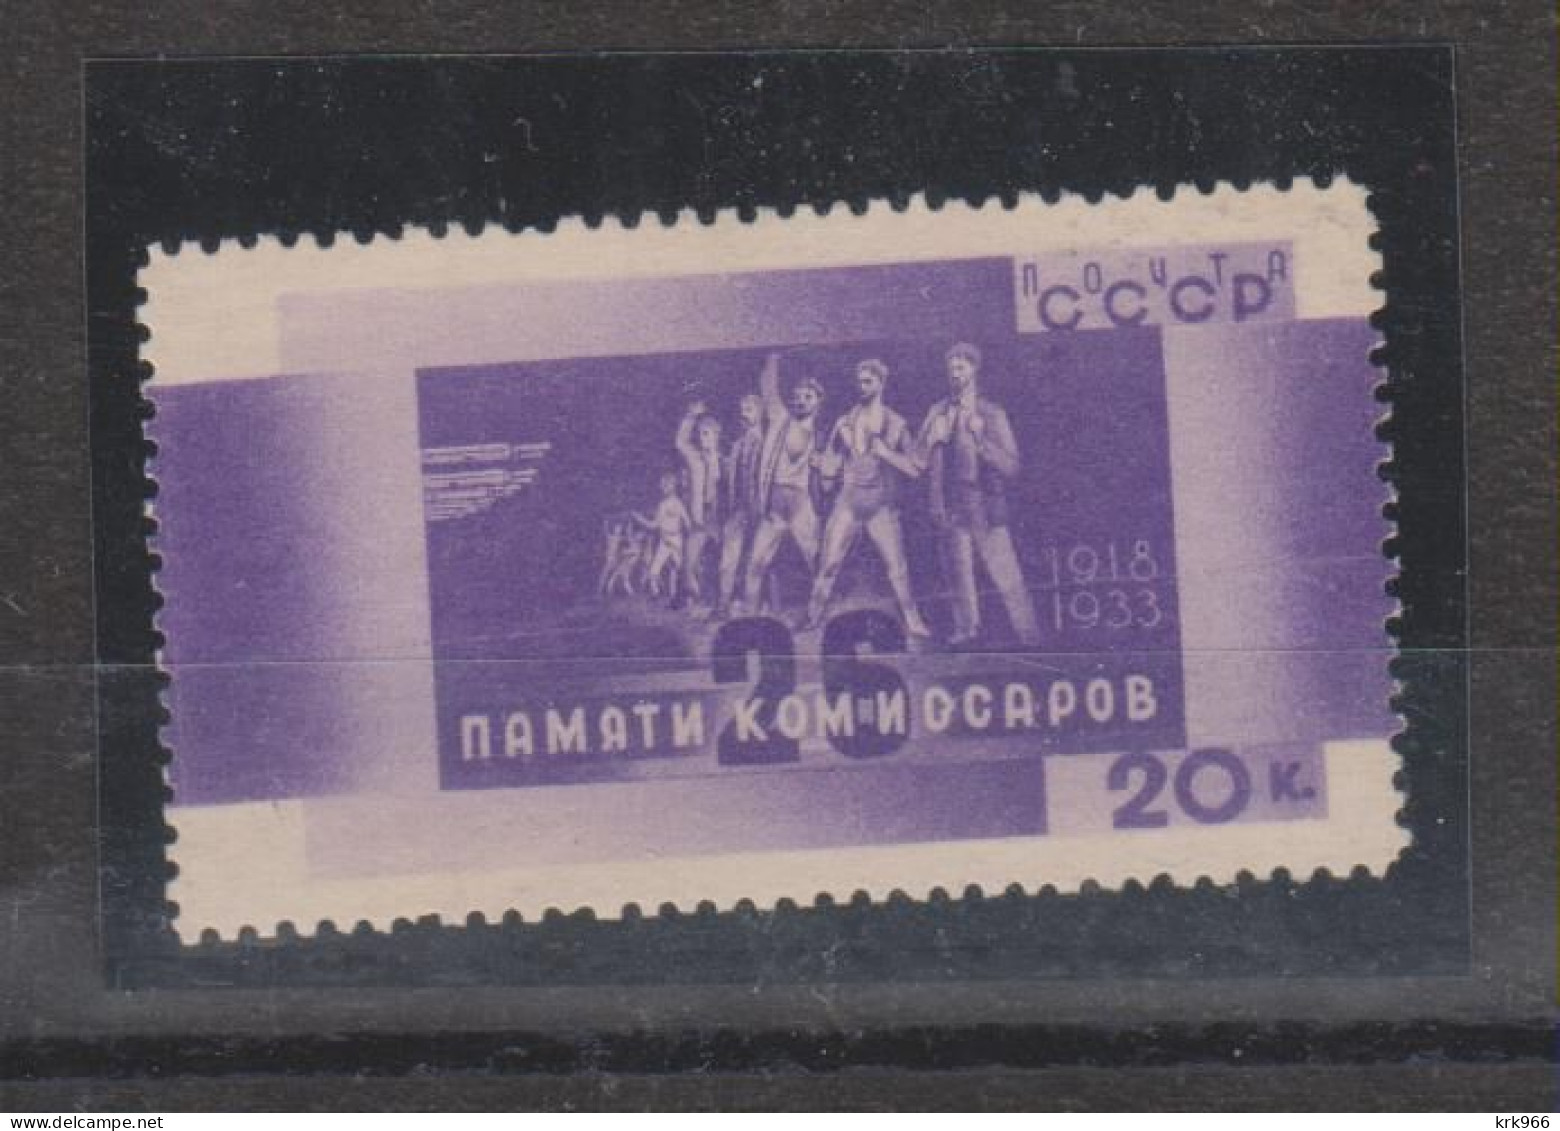 RUSSIA 1933 20 K Nice Stamp   MNH - Ungebraucht